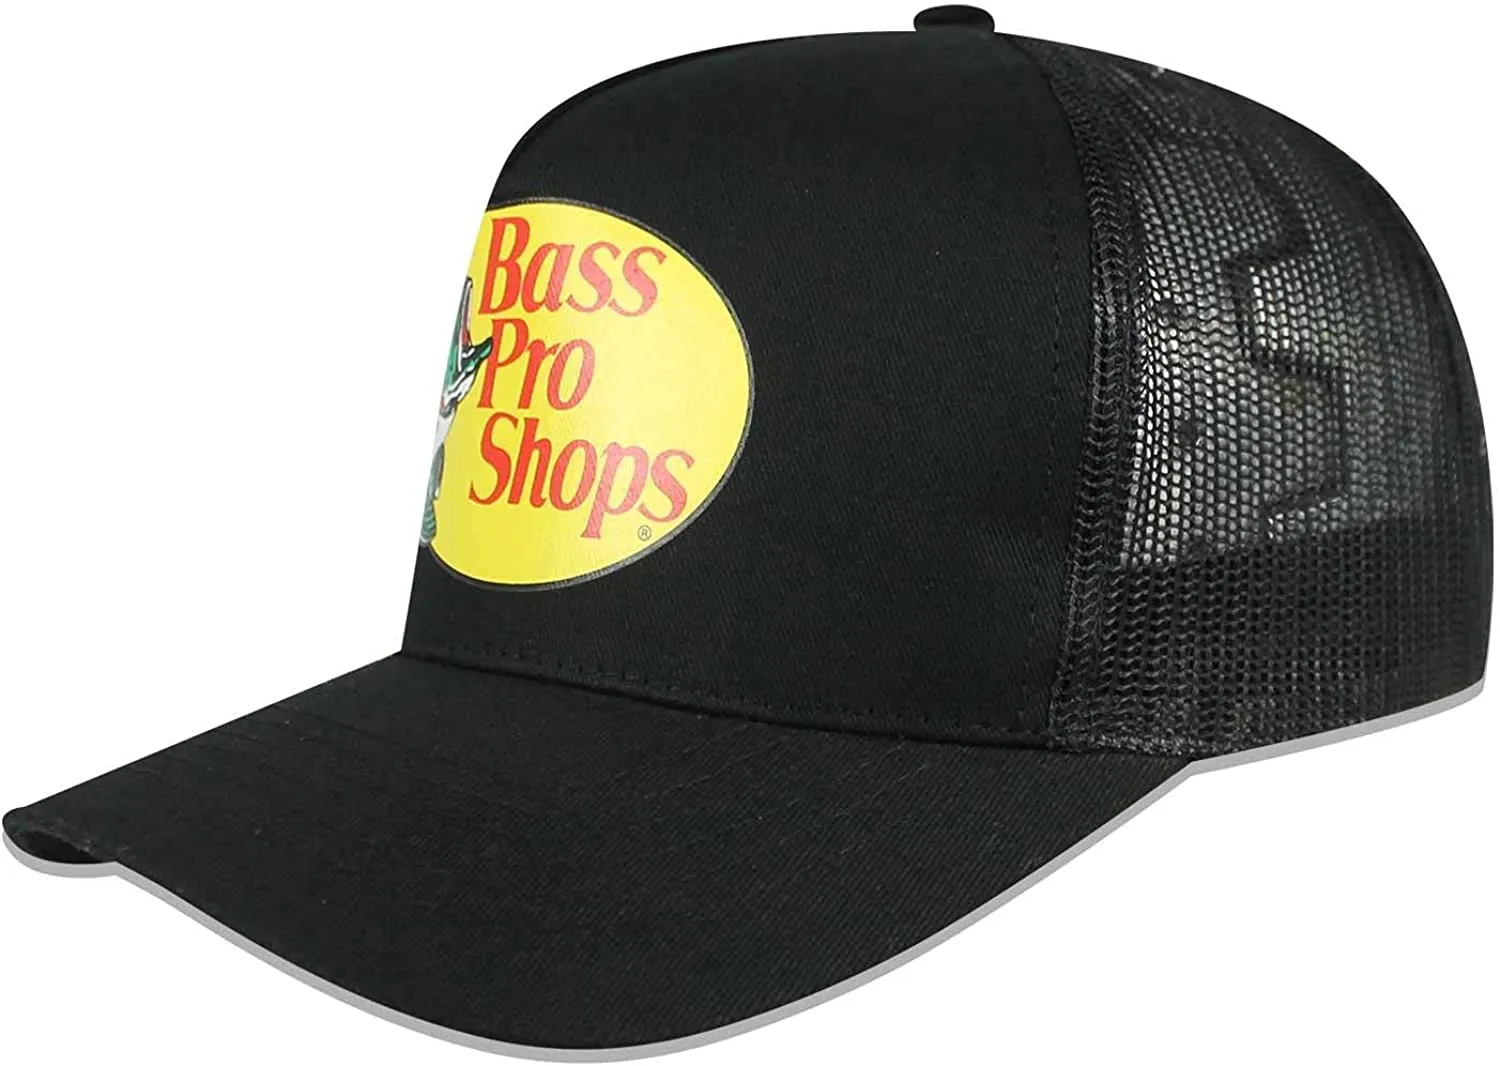 bass_pro_hat.webp